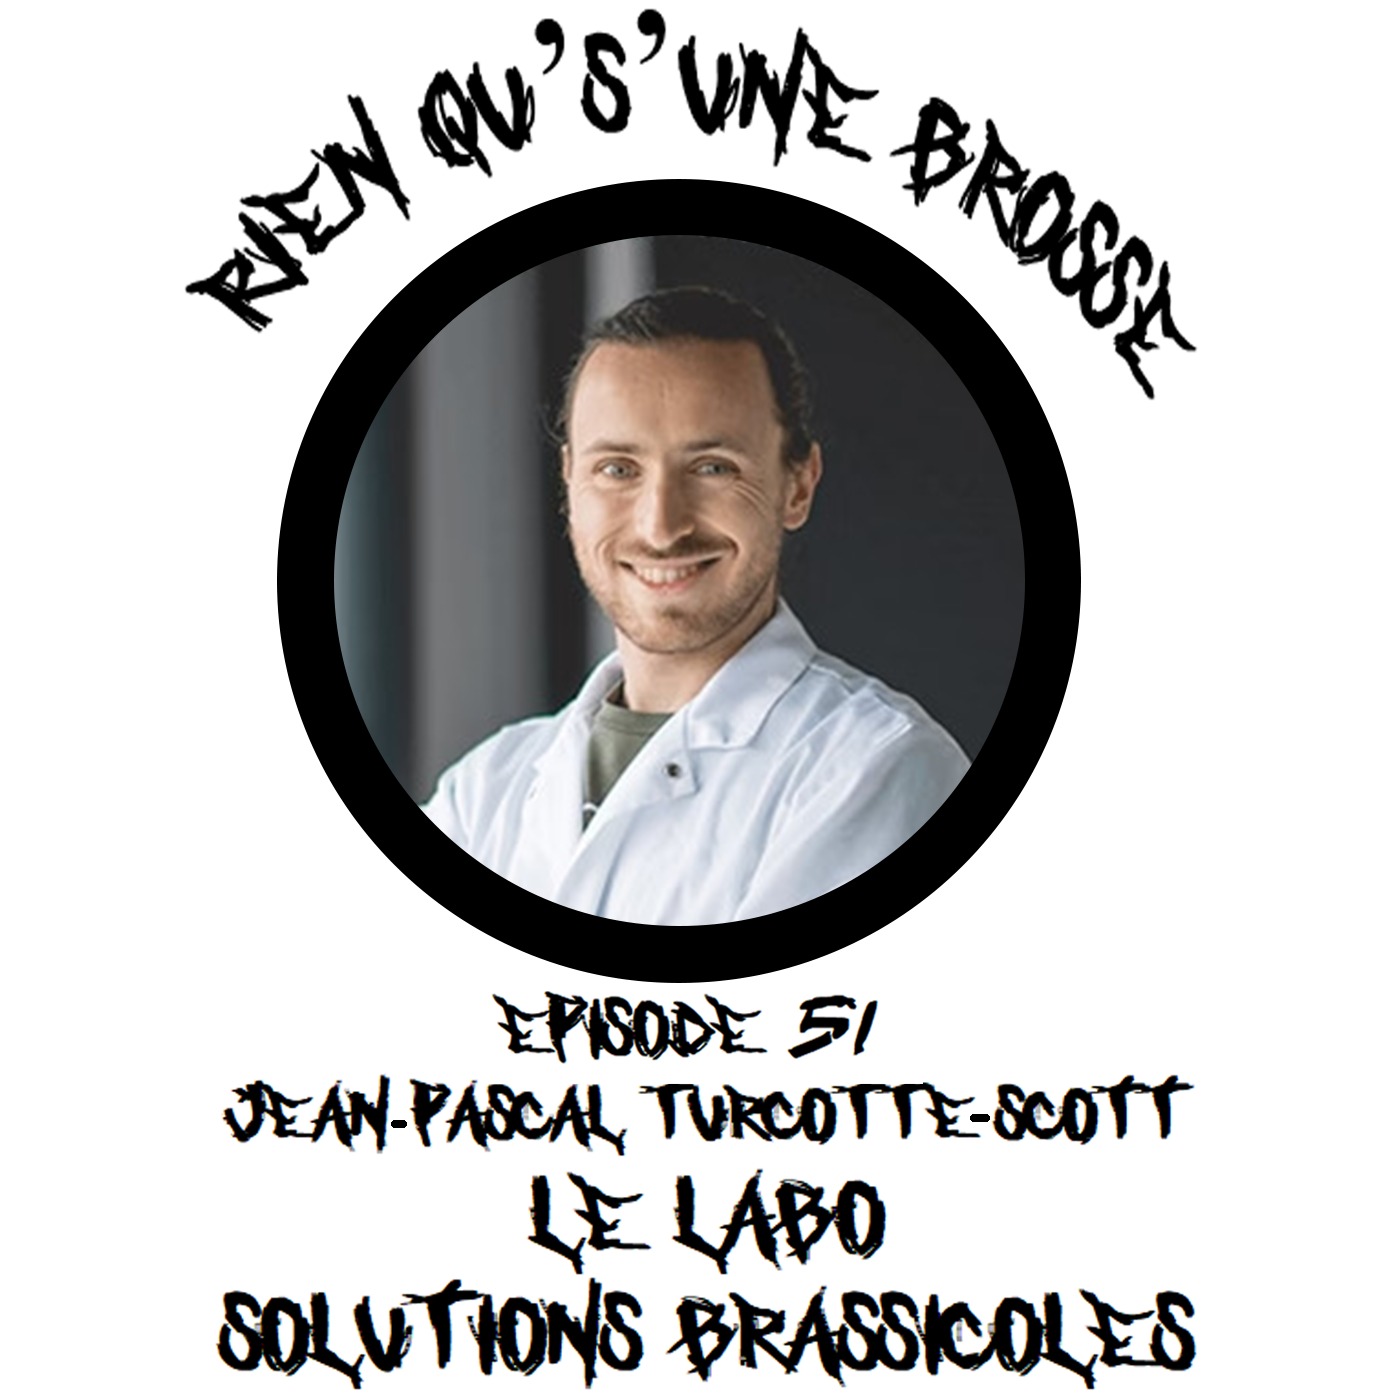 Épisode 51 - Jean-Pascal Turcotte-Scott (Le labo Solutions Brassicoles)